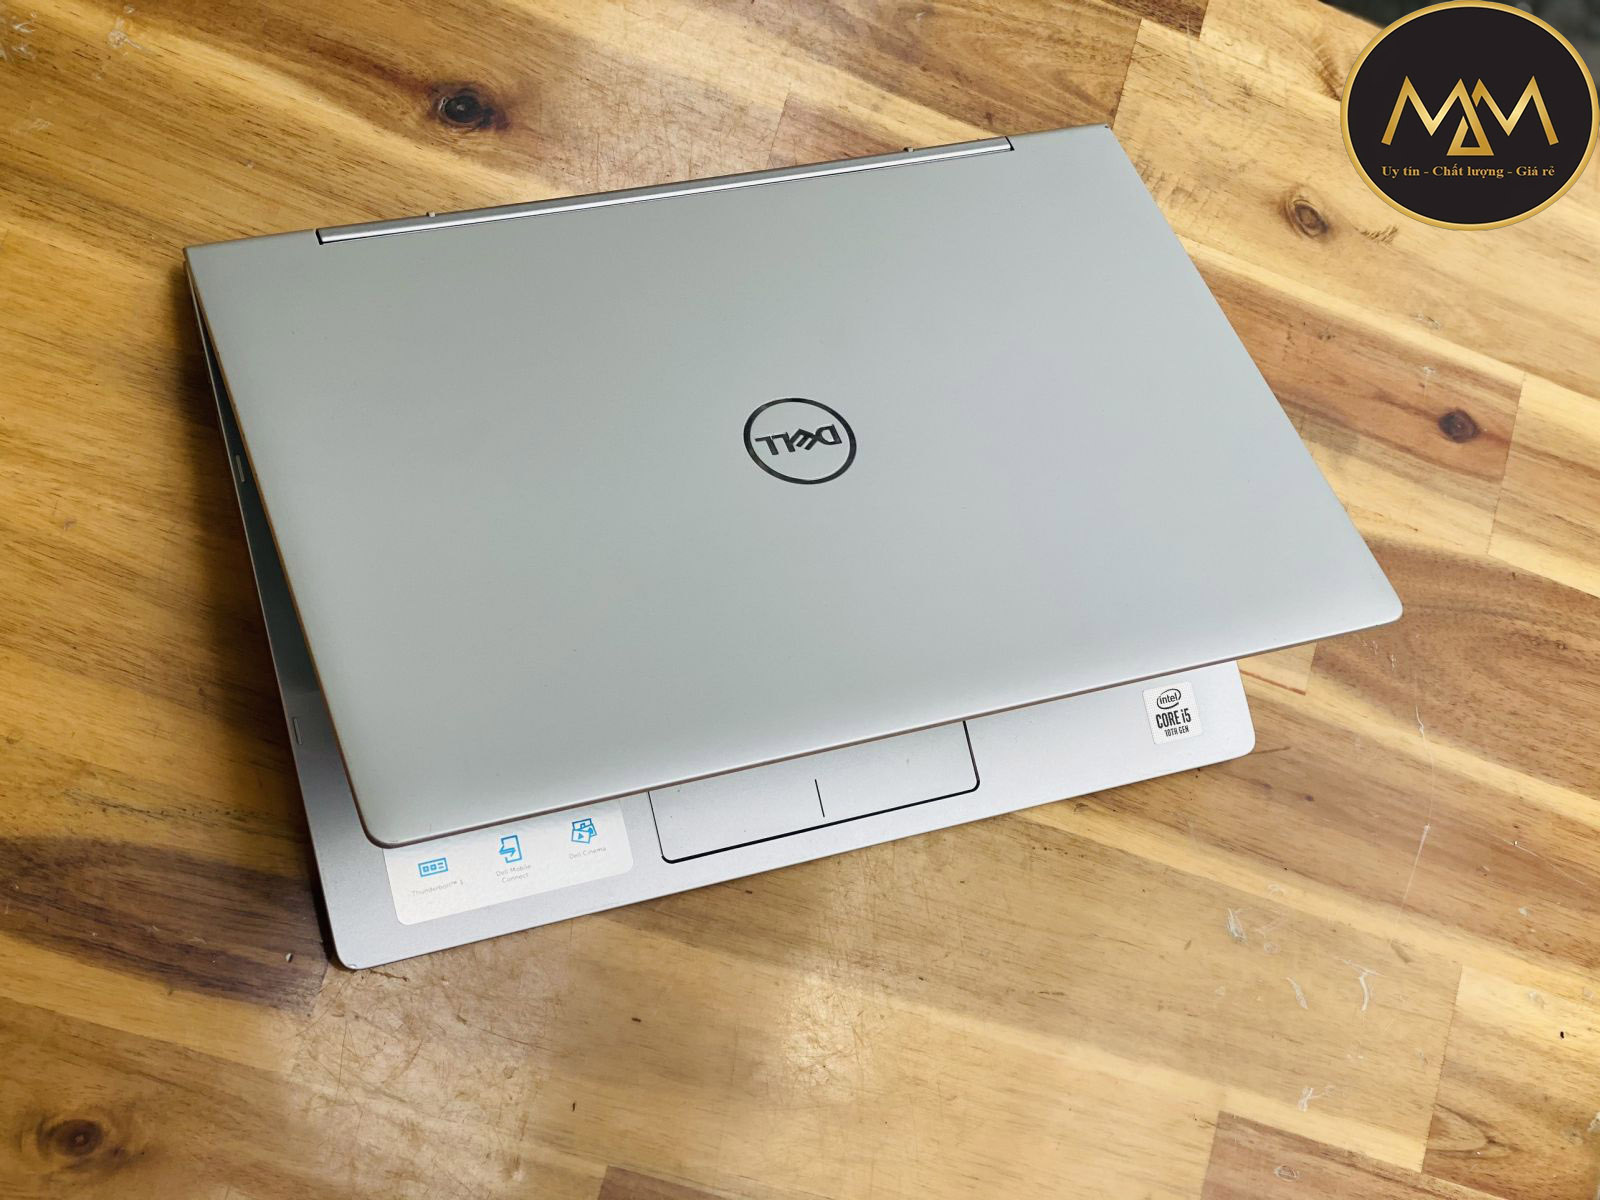 Laptop-Dell-core-i5-cũ-TPHCM-giá-rẻ